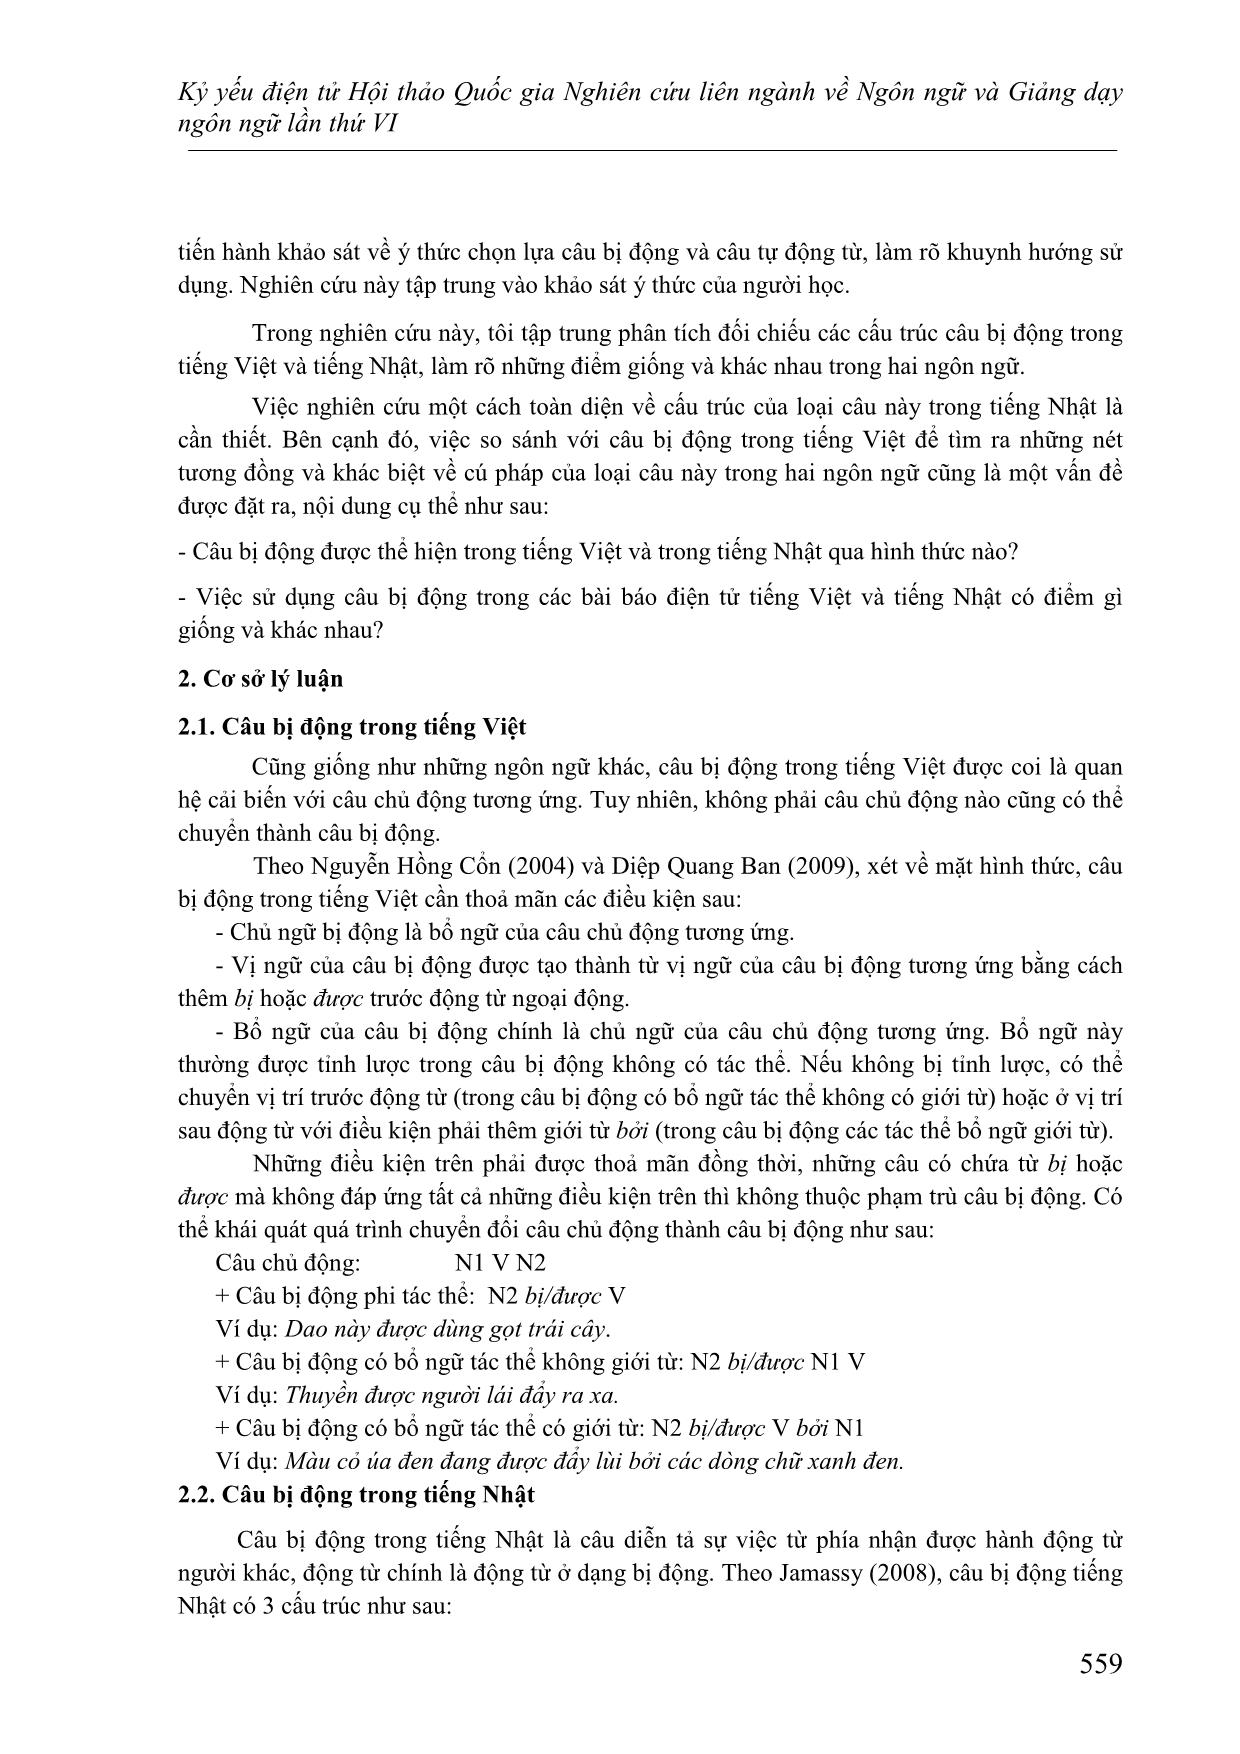 Đối chiếu đặc điểm cö pháp của câu bị động trong tiếng Việt và Tiếng Nhật trang 3